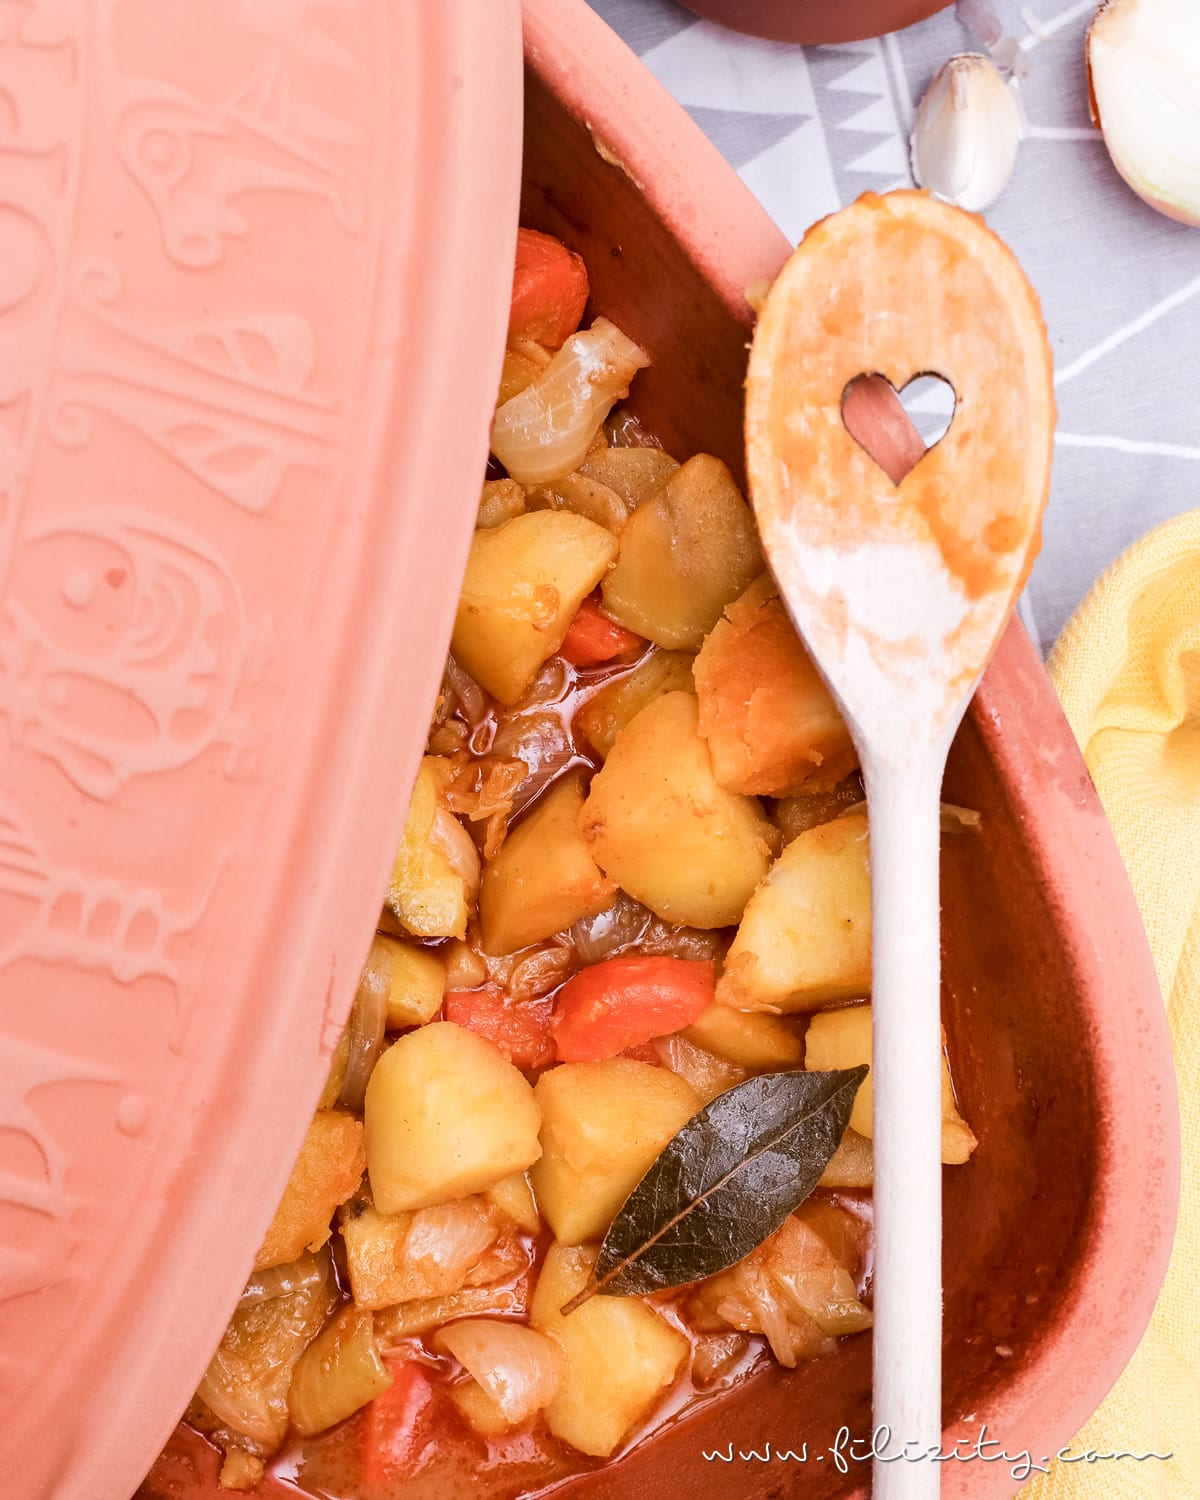 Rezept für unglaublich leckeren (veganen) Kartoffelgulasch aus dem Römertopf | Filizity.com | Food-Blog aus dem Rheinland #römertopf #vegan #gulasch